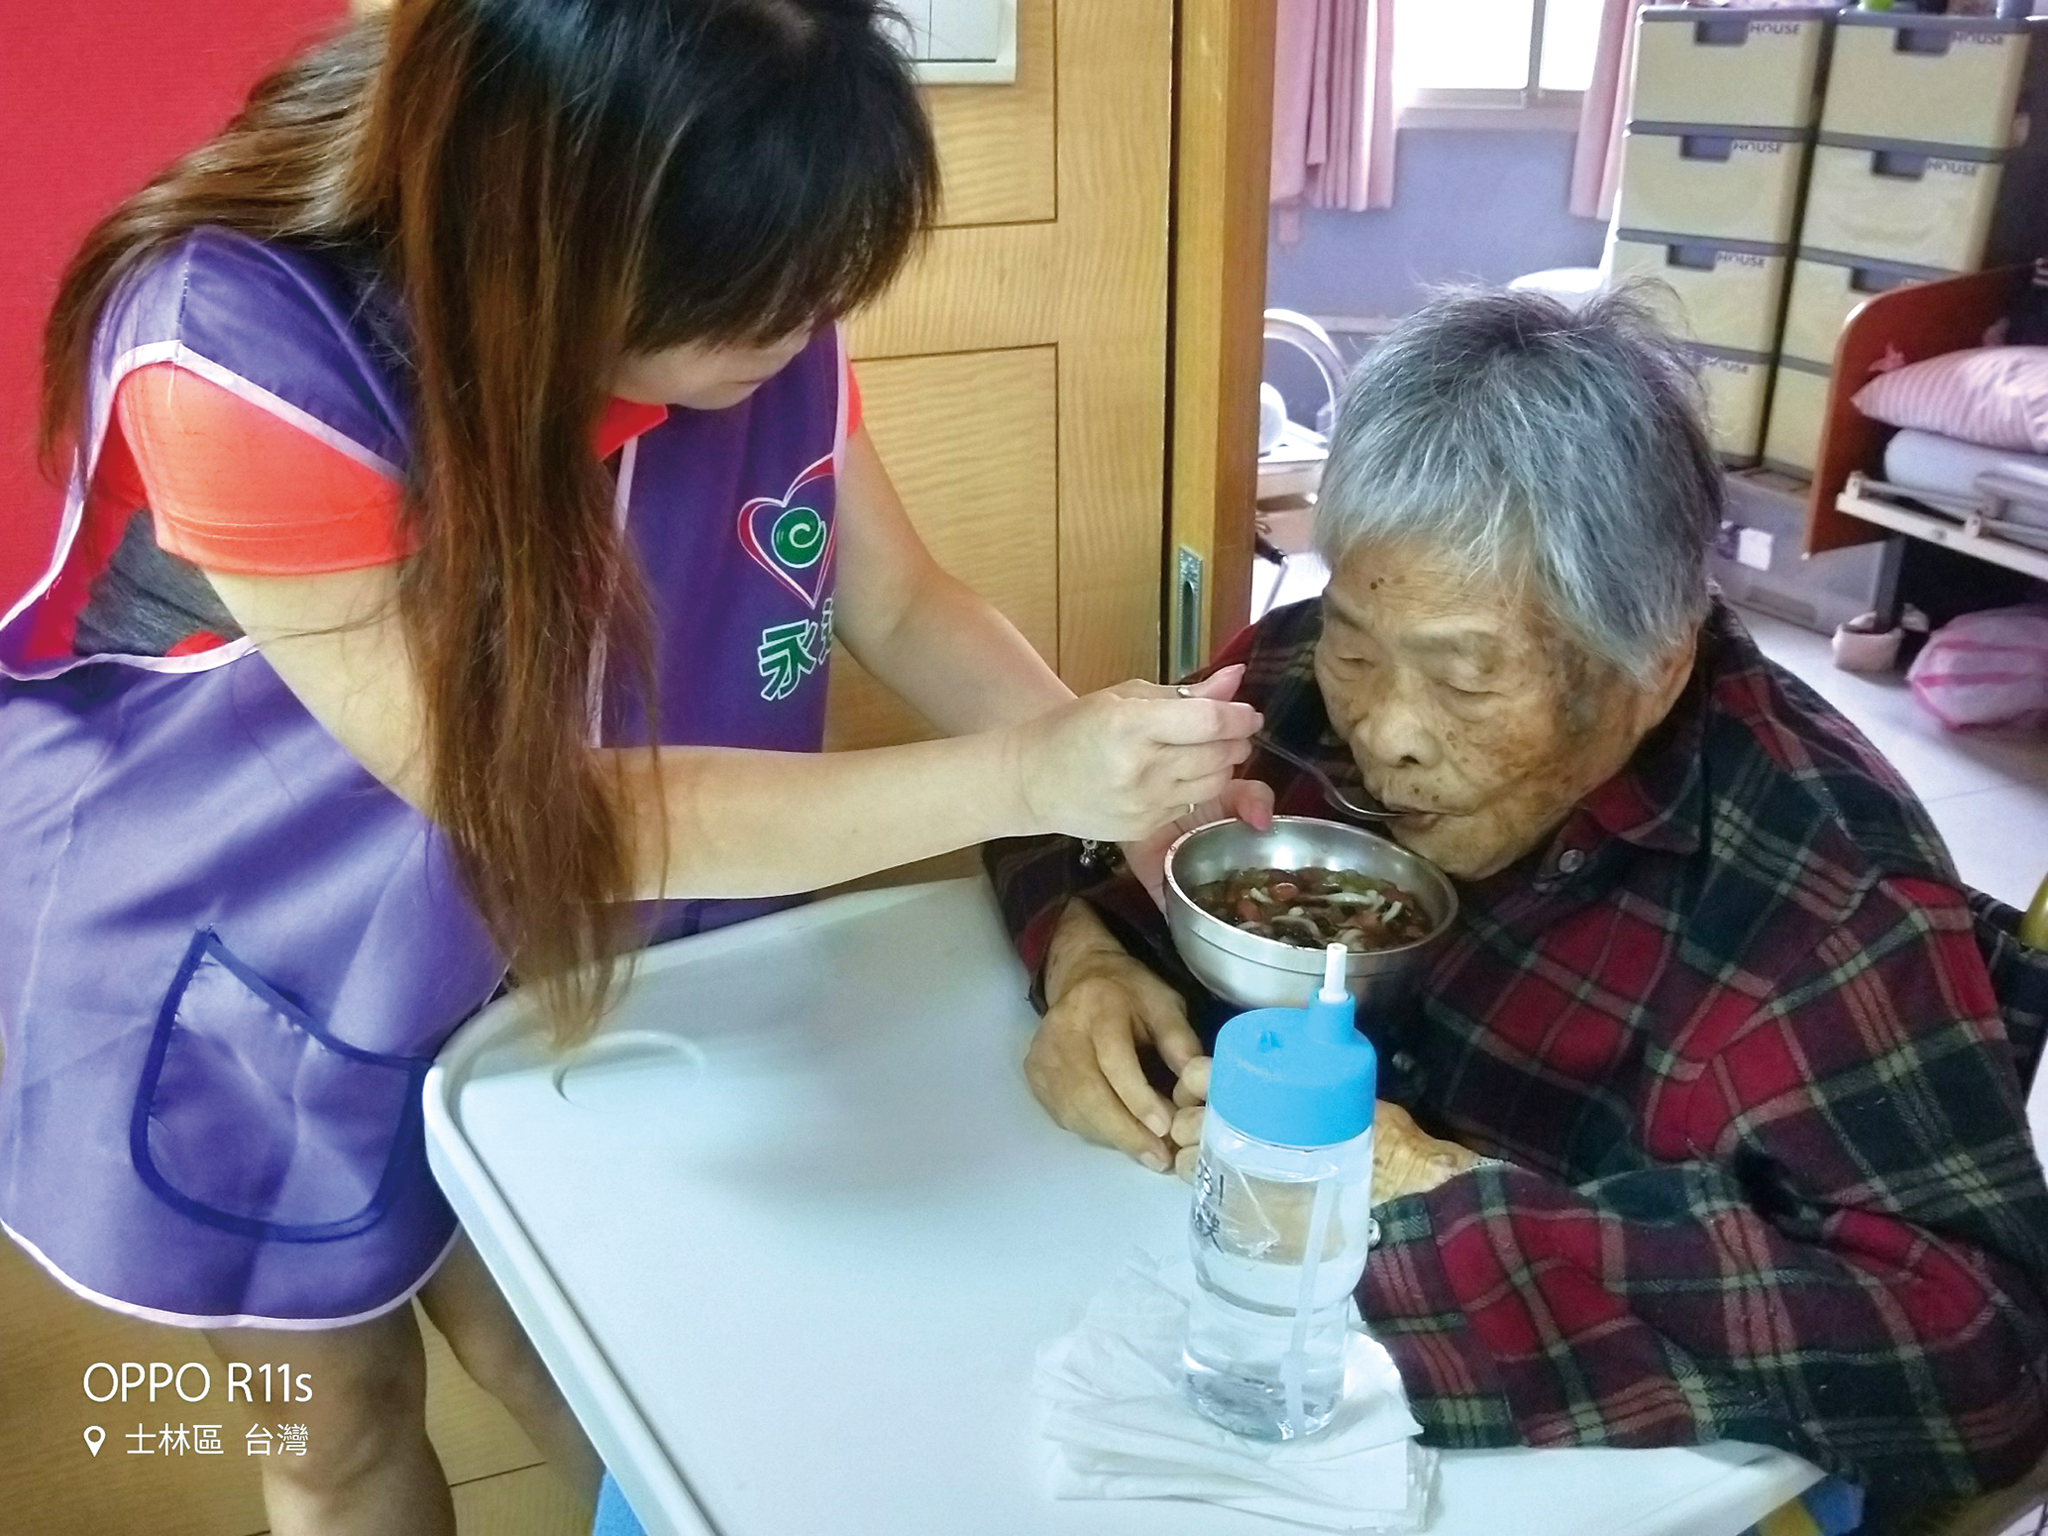 永達志工協助長輩吃剉冰。